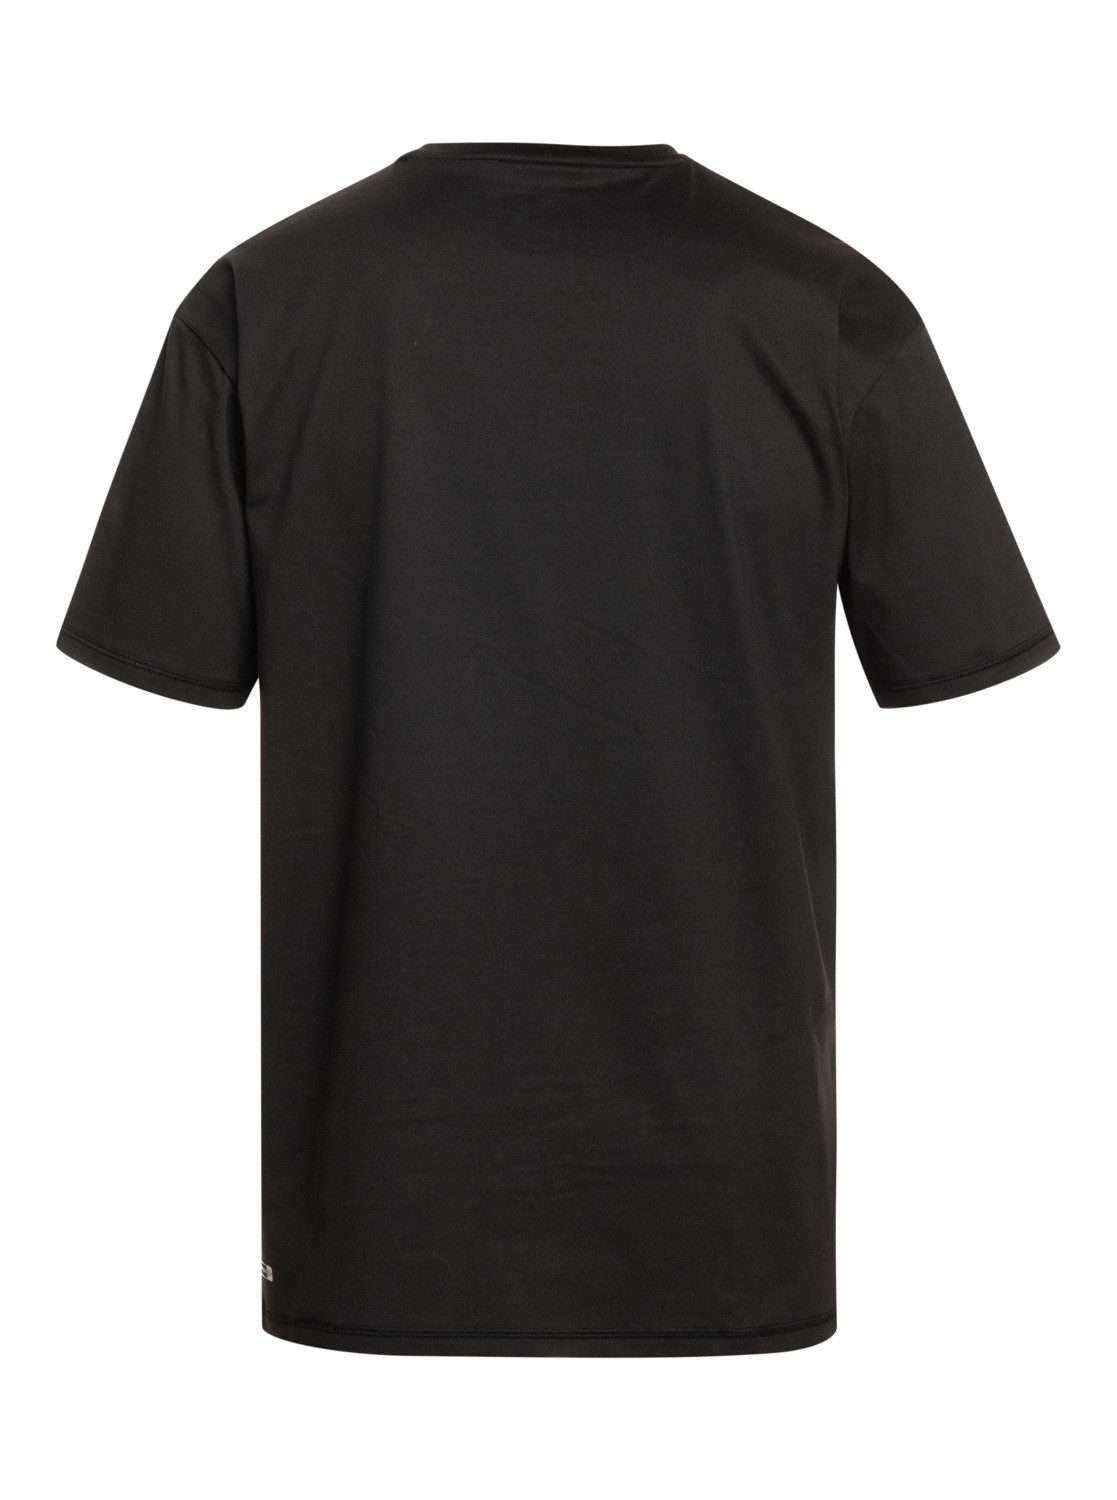 Quiksilver Solid Shirt Black Neopren Streak